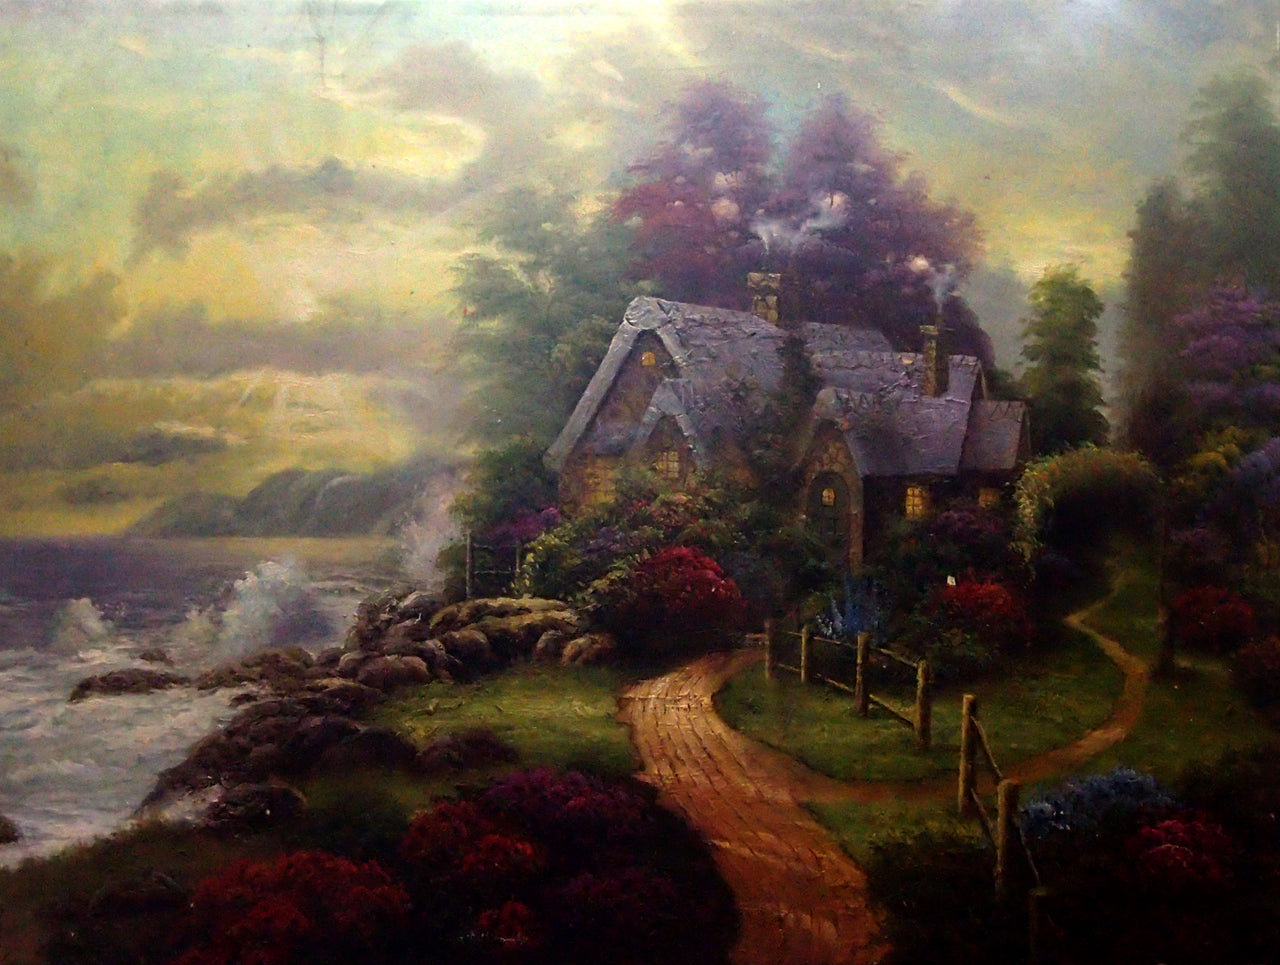 LS4819726 - 36"x48" Original Oil Painting